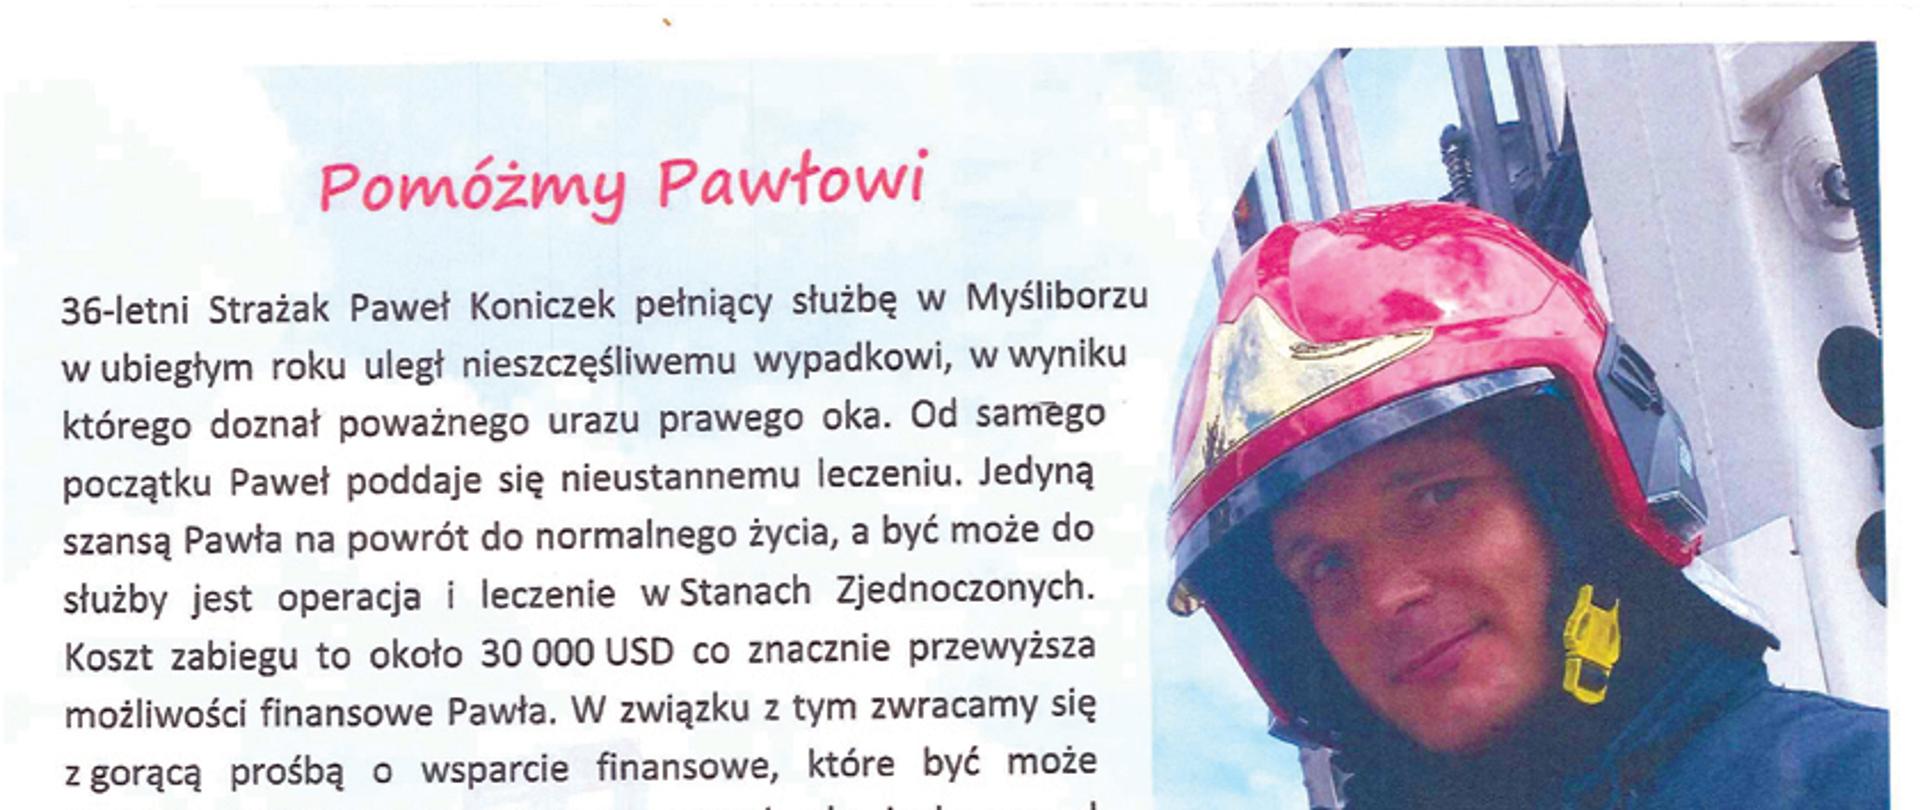 Na zdjęciu 36-letni strażak Paweł Koniczek